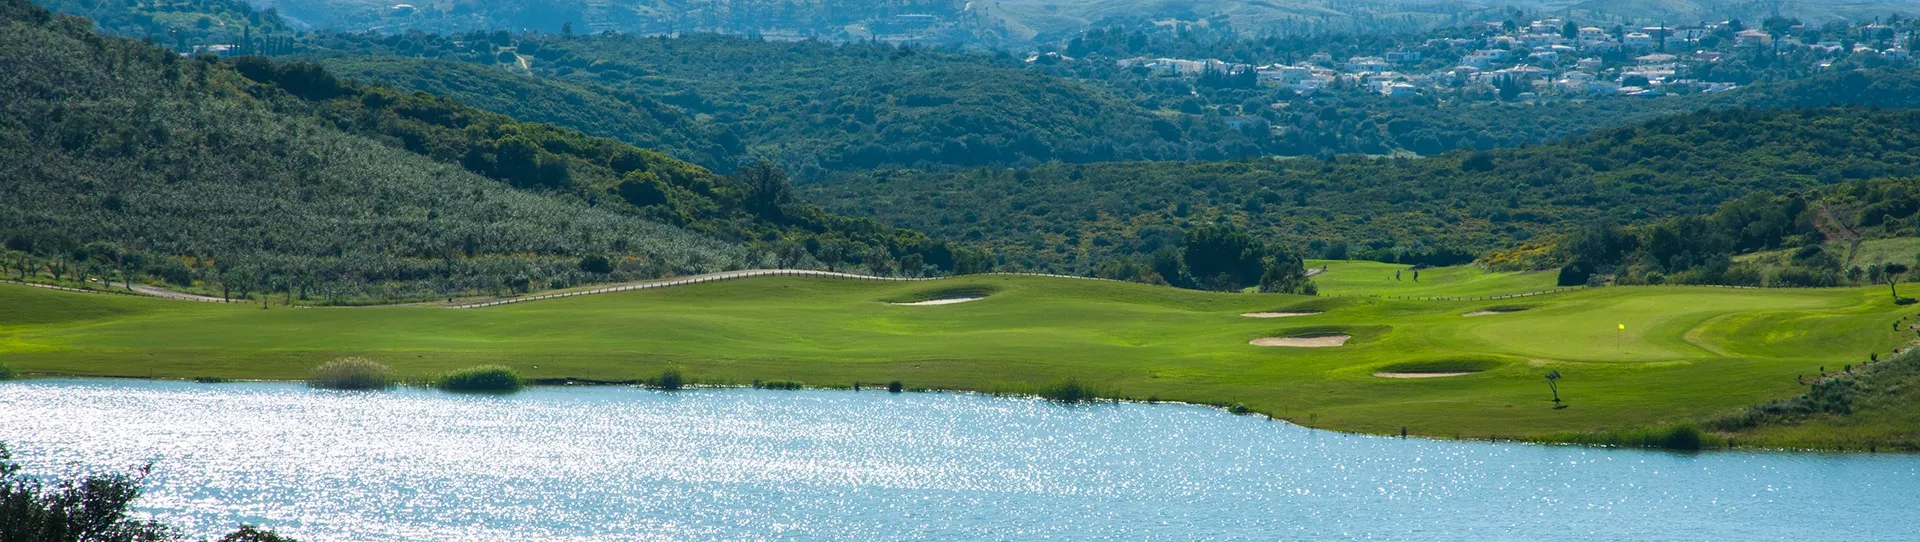 Portugal Golf Driving Range - Morgado do Reguengo Golf Academy - Photo 2